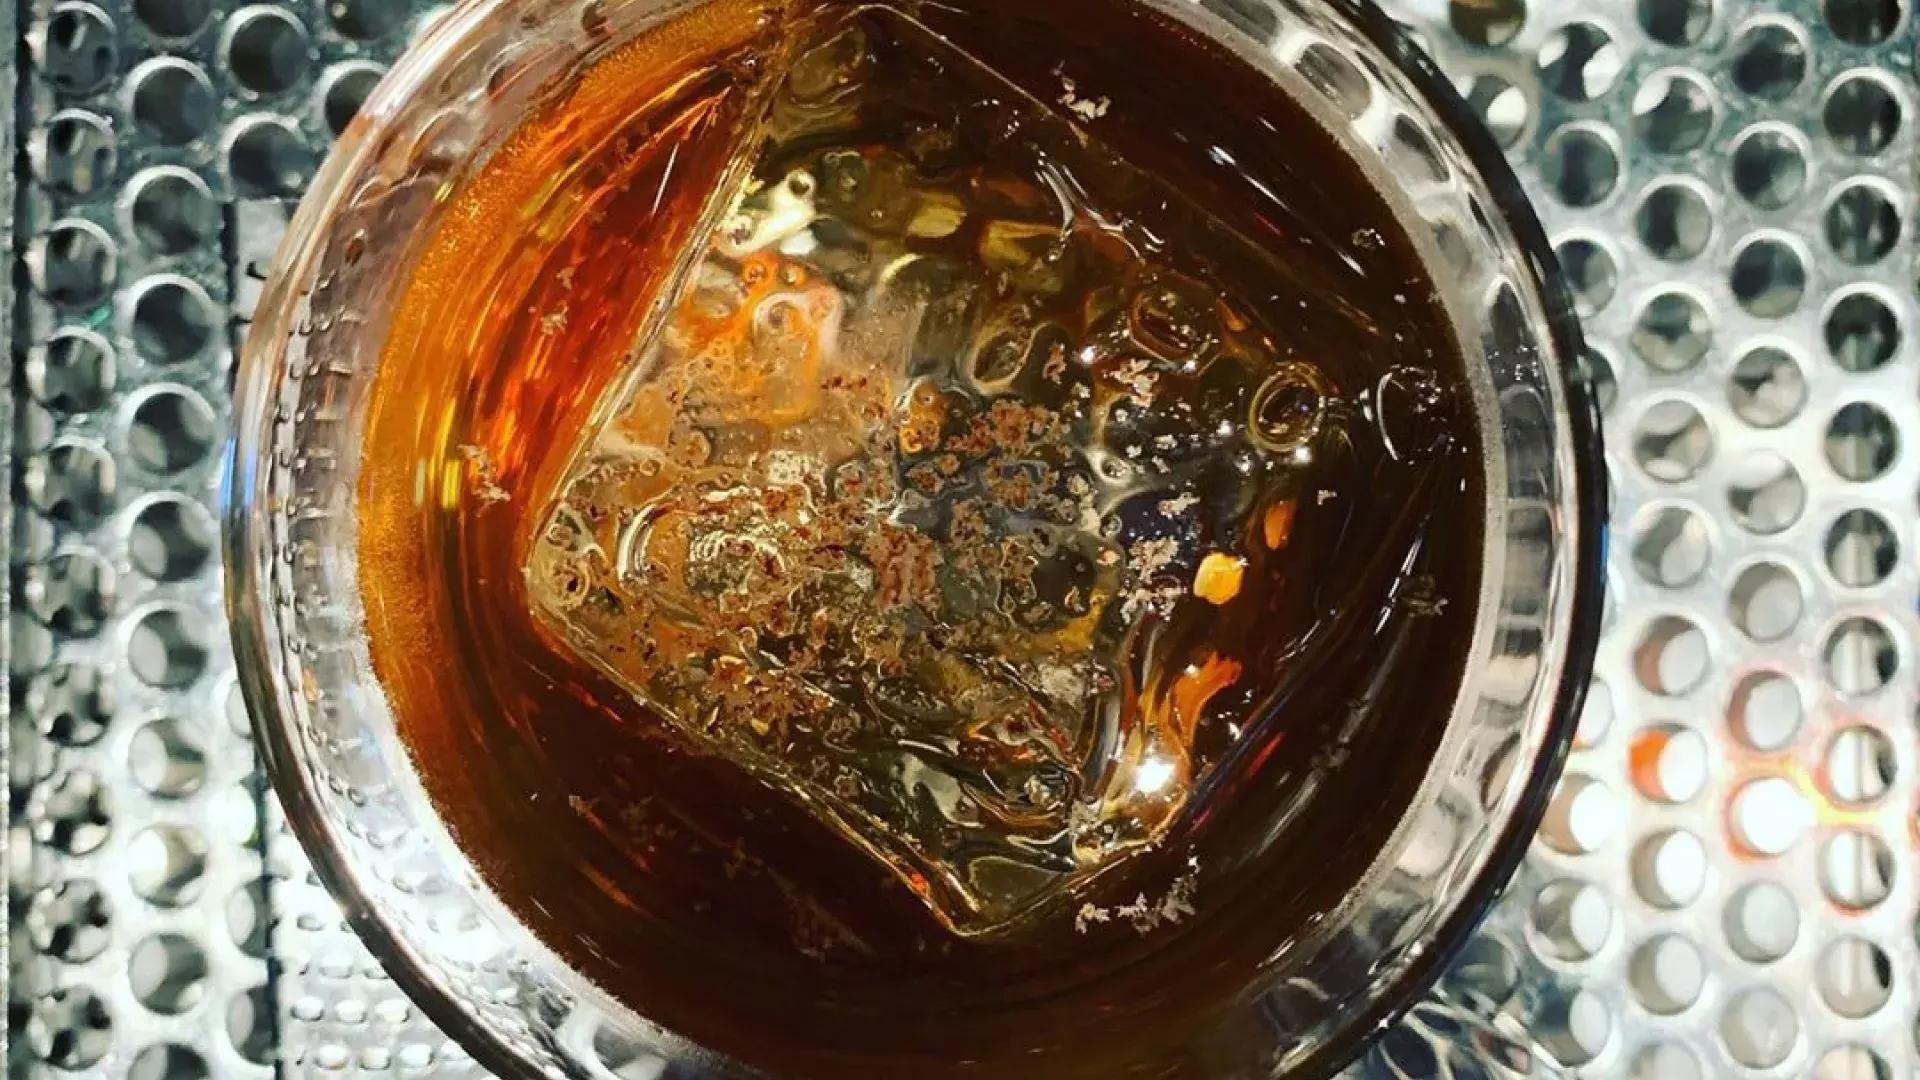 贝博体彩app的第三铁路酒吧提供威士忌鸡尾酒.